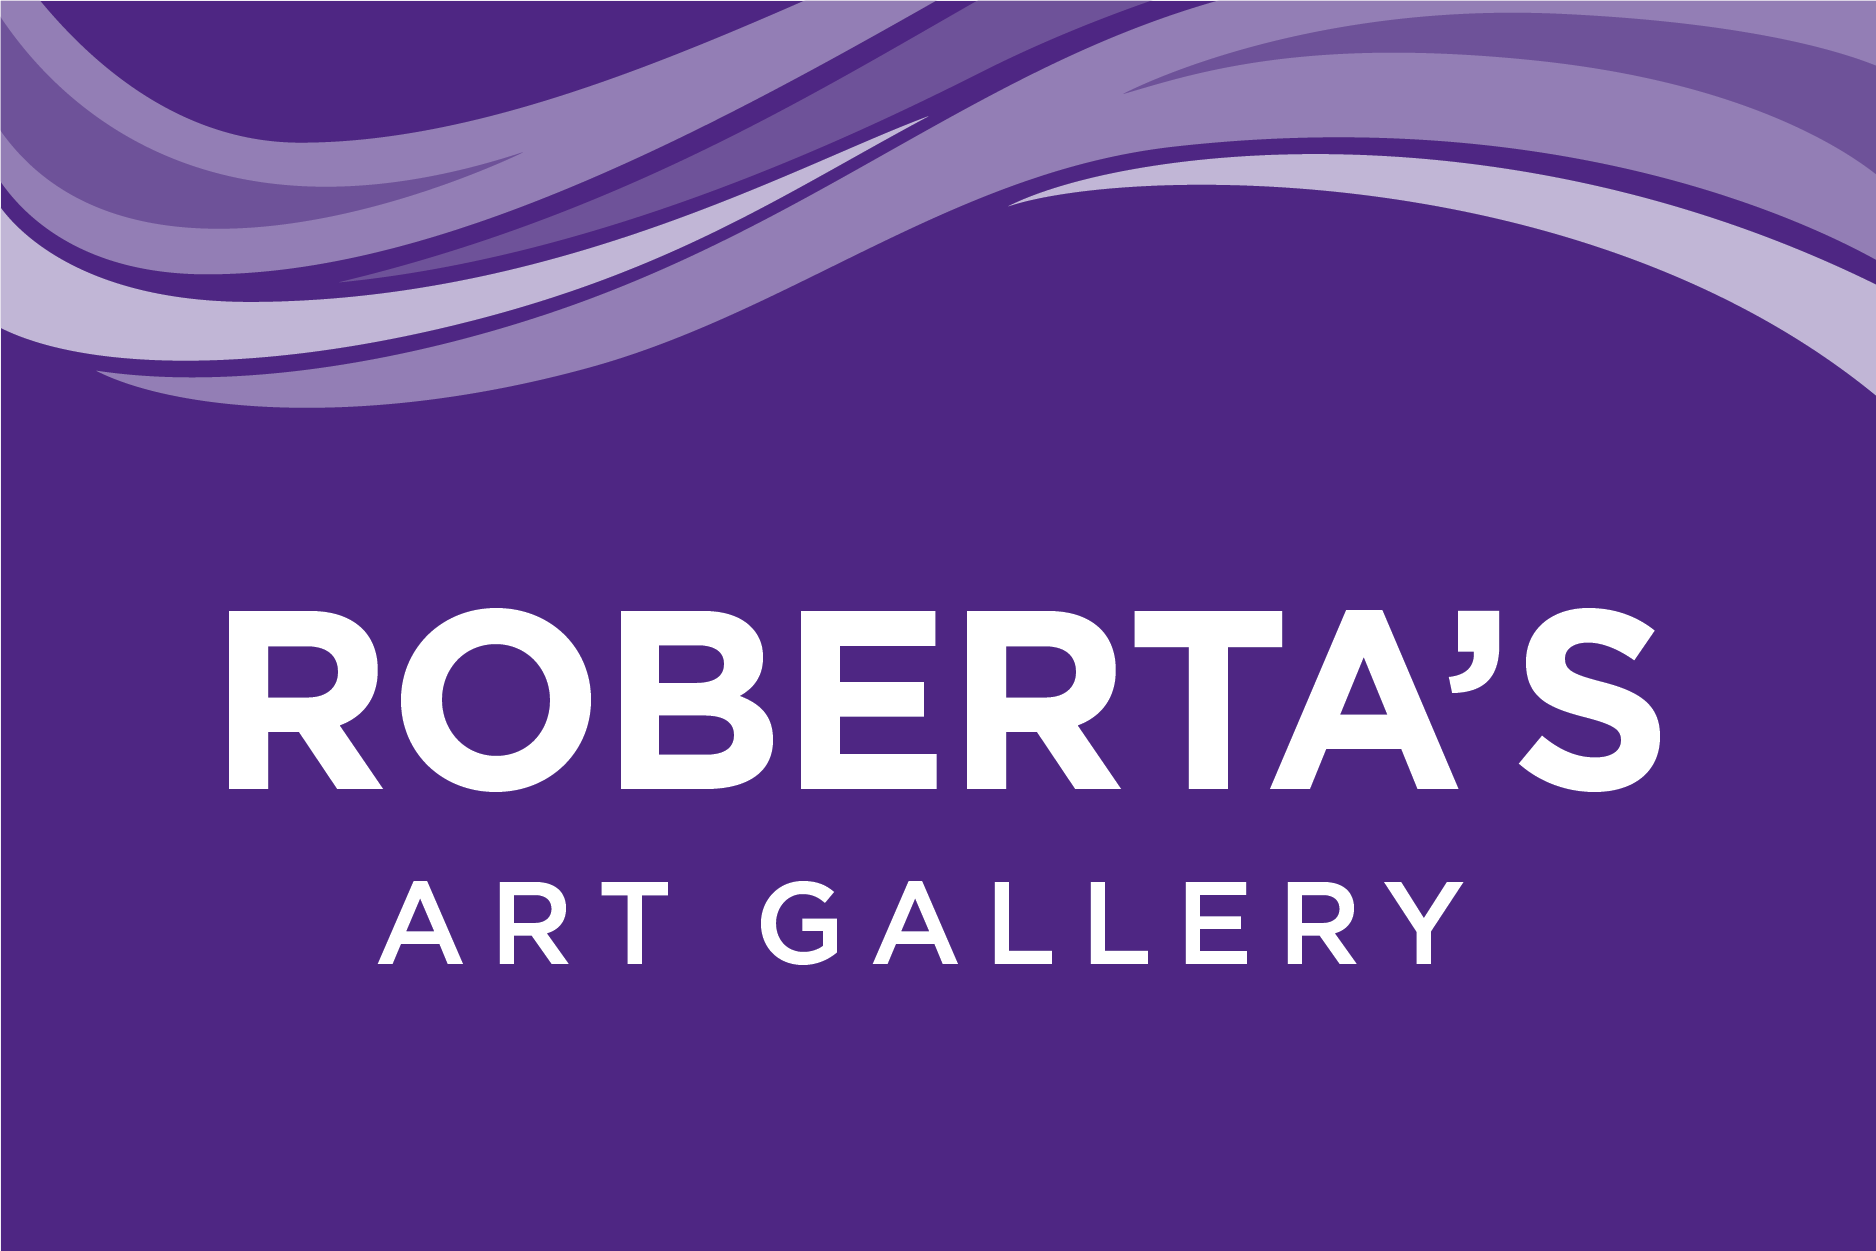 Roberta's Art Gallery at UW-Whitewater